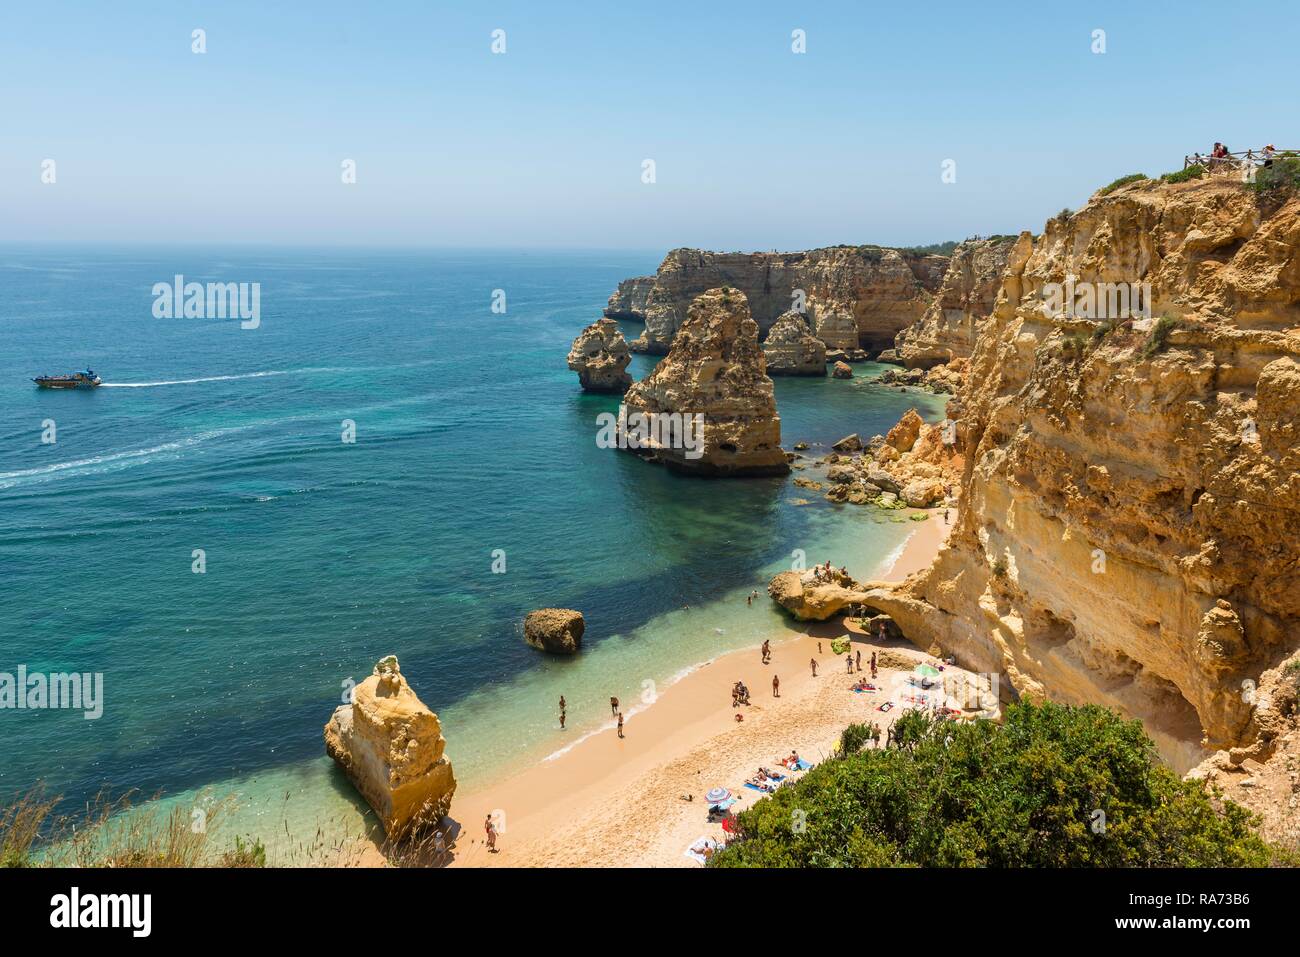 Spiaggia gli ospiti, mare turchese, Praia da Marinha, robusto costa rocciosa di arenaria, formazioni rocciose nel mare, Algarve, Lagos Foto Stock